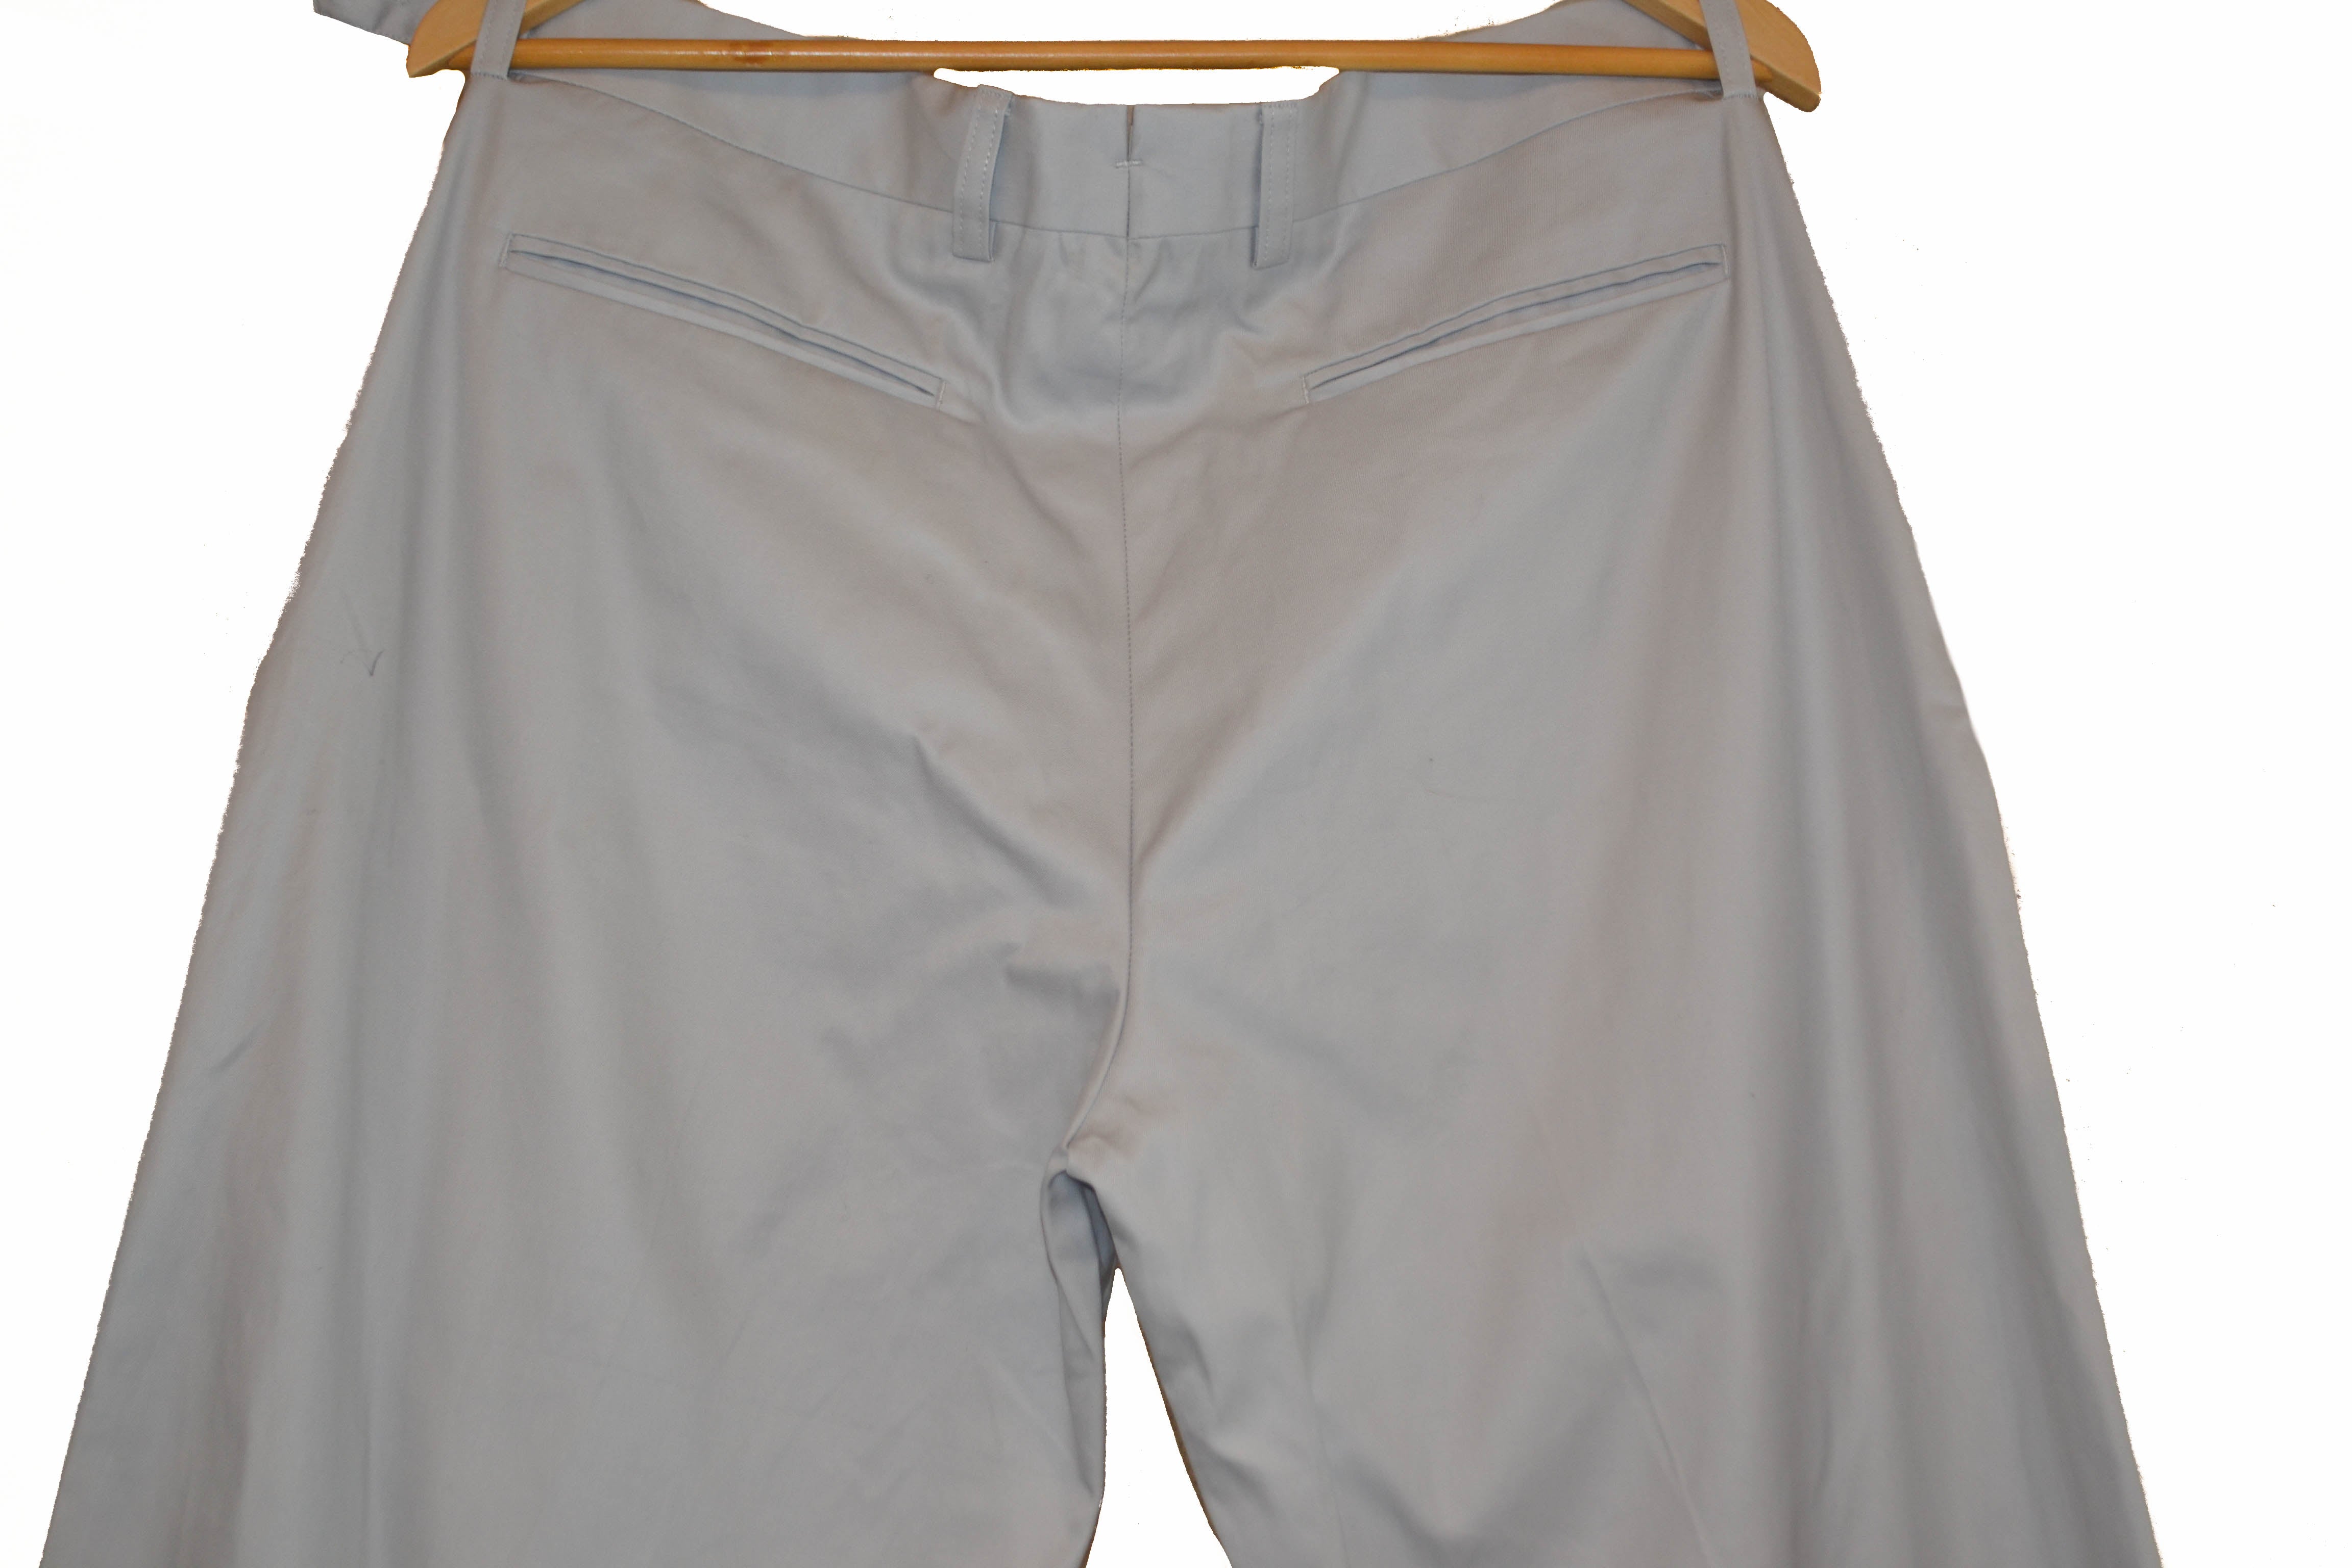 Authentic Louis Vuitton Grey Men's Pants Size 50